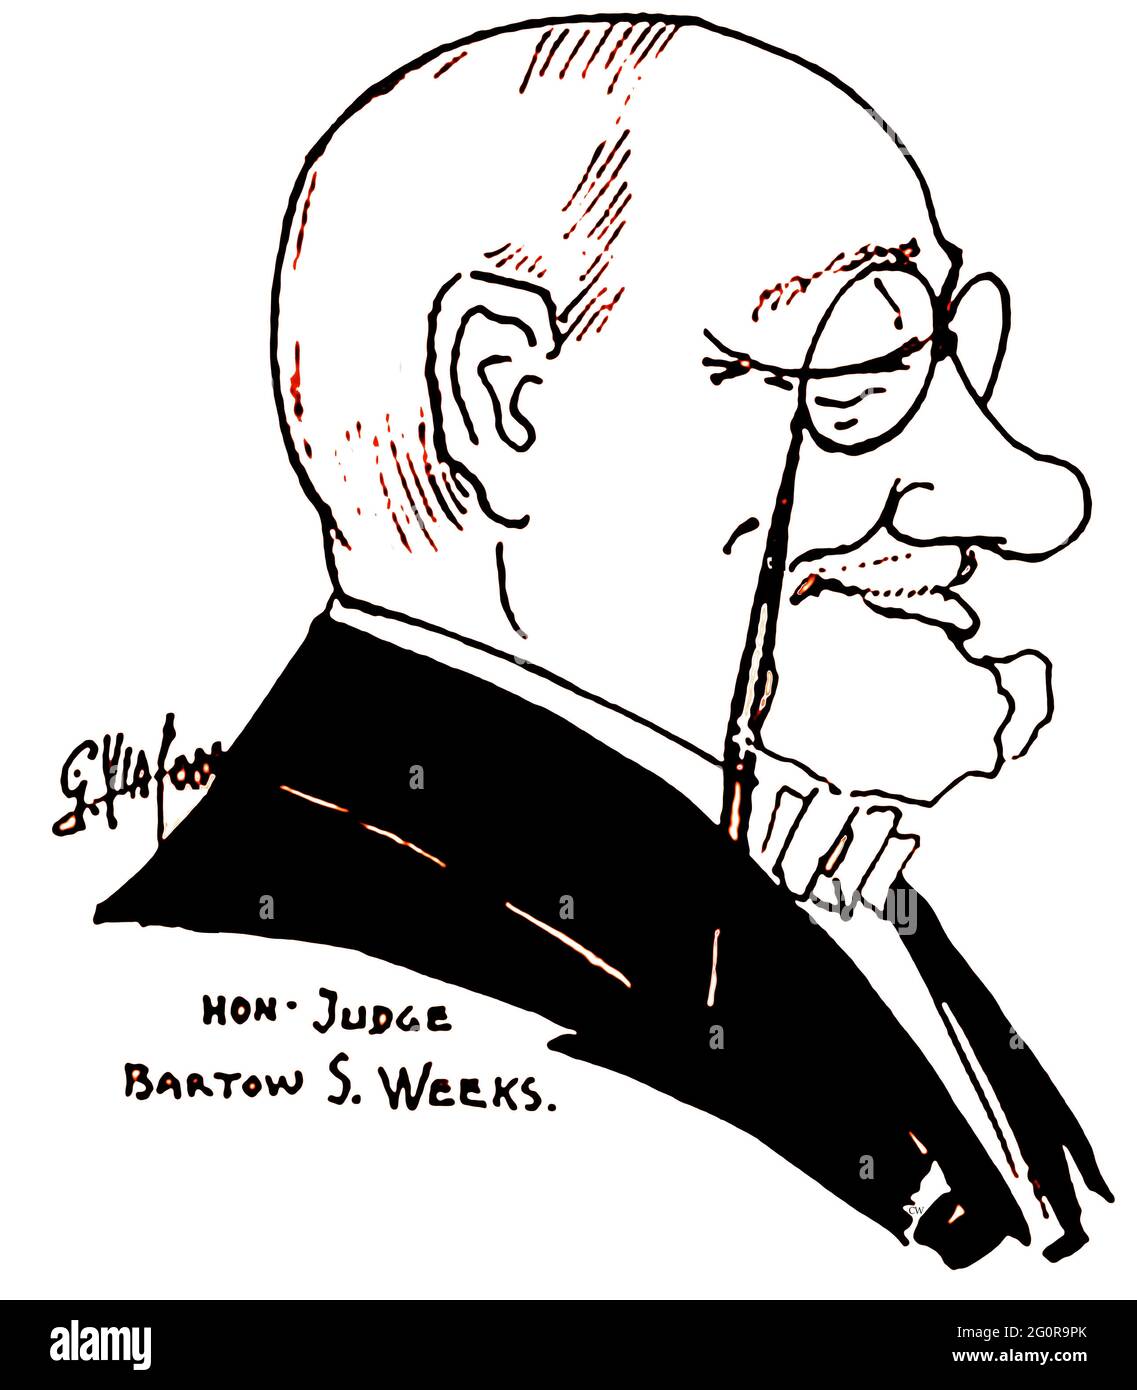 1919 - l'honorable juge Bartow S Weeks - d'un livre de caricatures de personnages célèbres de l'époque par l'artiste Giovanni Viafora (Etats-Unis) - Bartow Sumter Weeks (1861 – 1922) était un président du New York Athletic Club et de l'amateur Athletic Union. Il était également un juge éminent de la Cour d'appel de New York. Banque D'Images